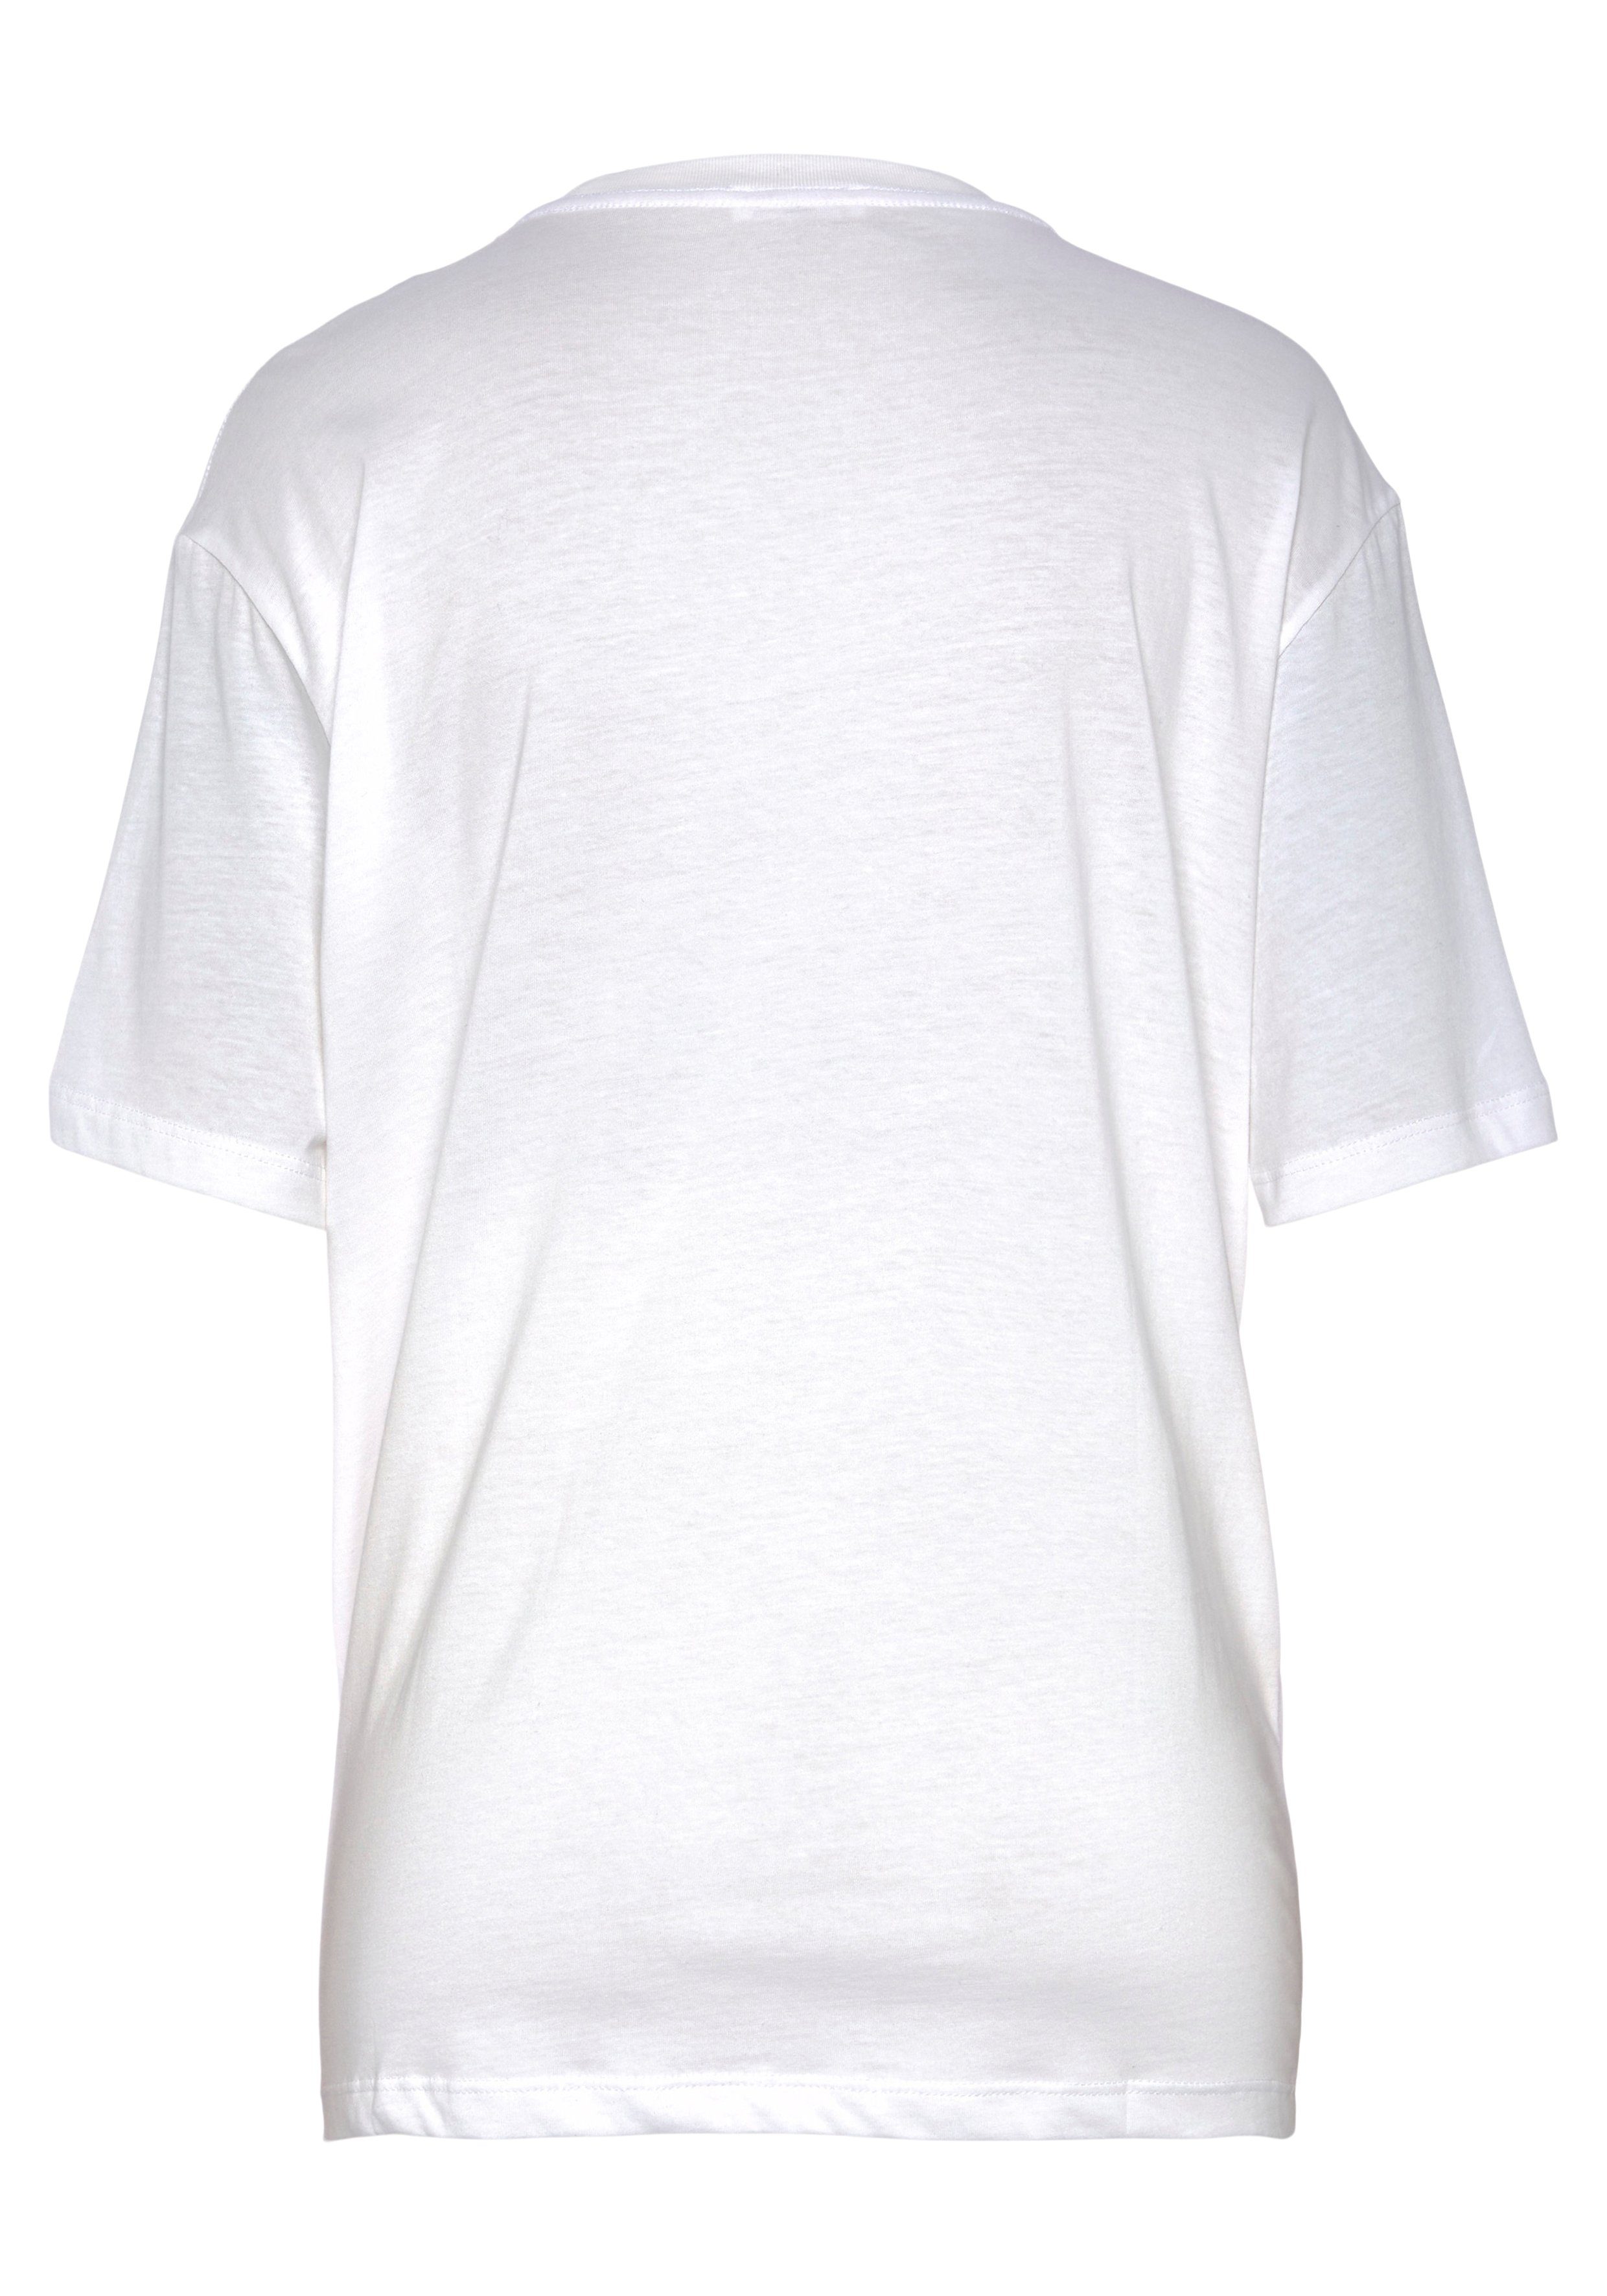 Replay white T-Shirt